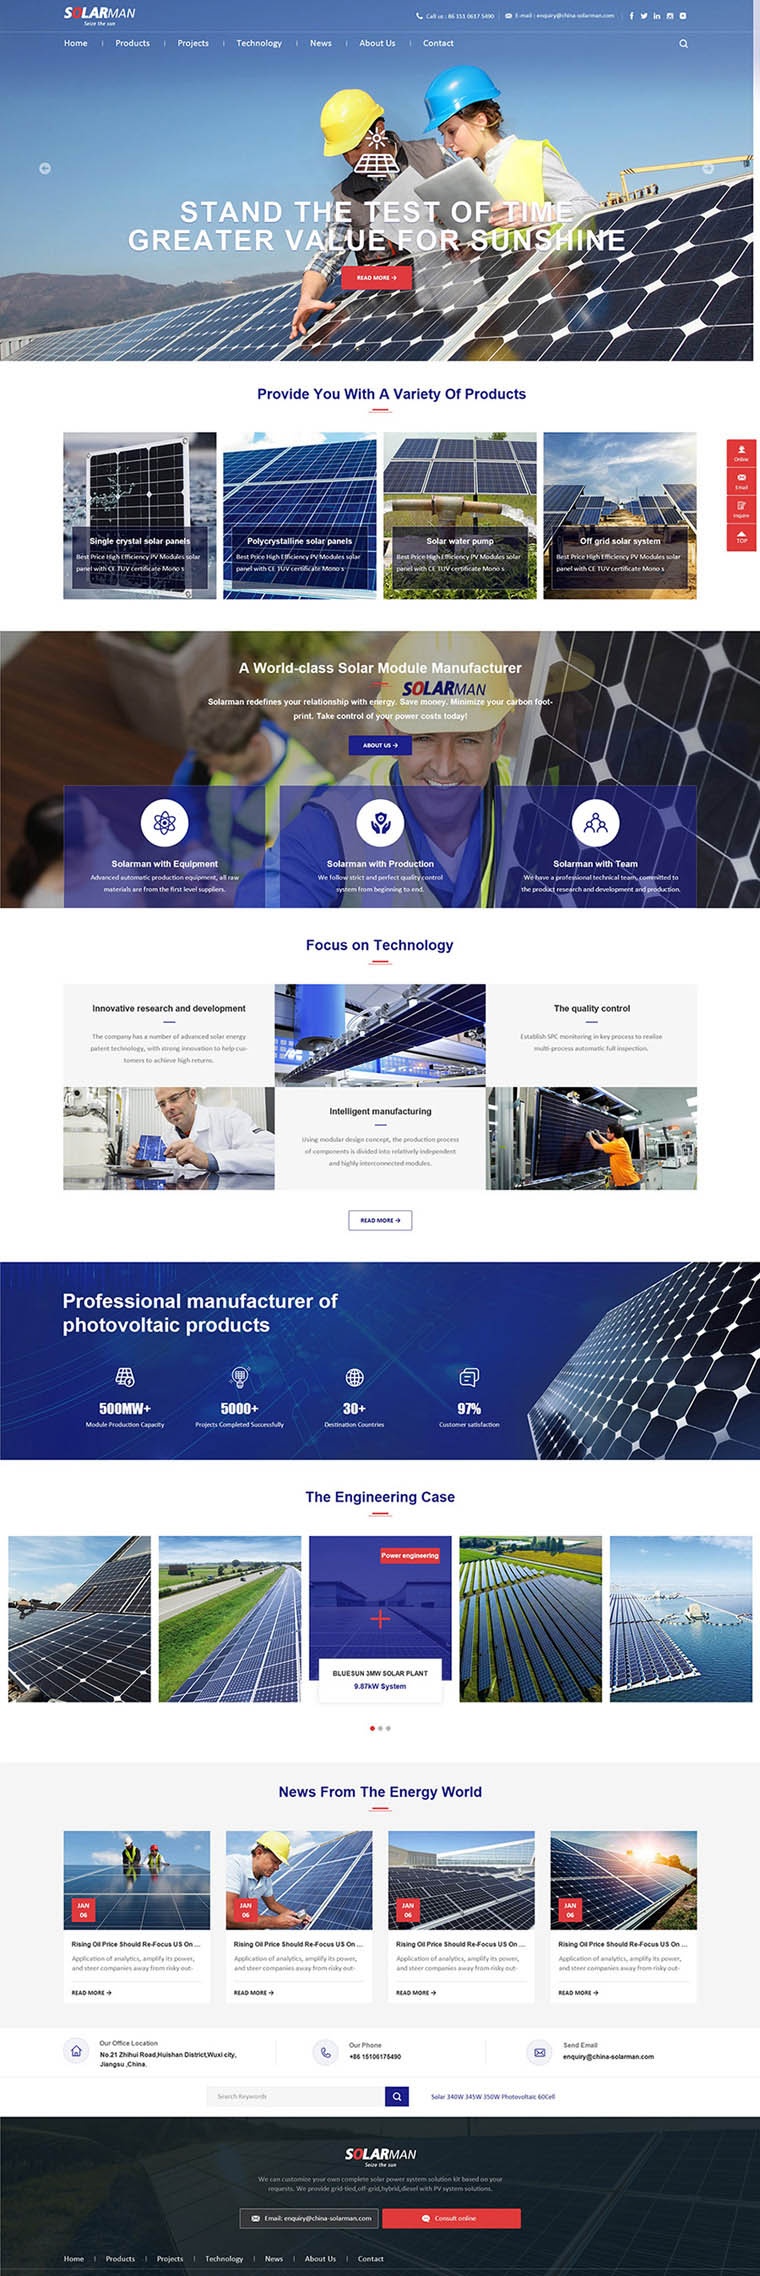 能源服务行业外贸网站设计案例 